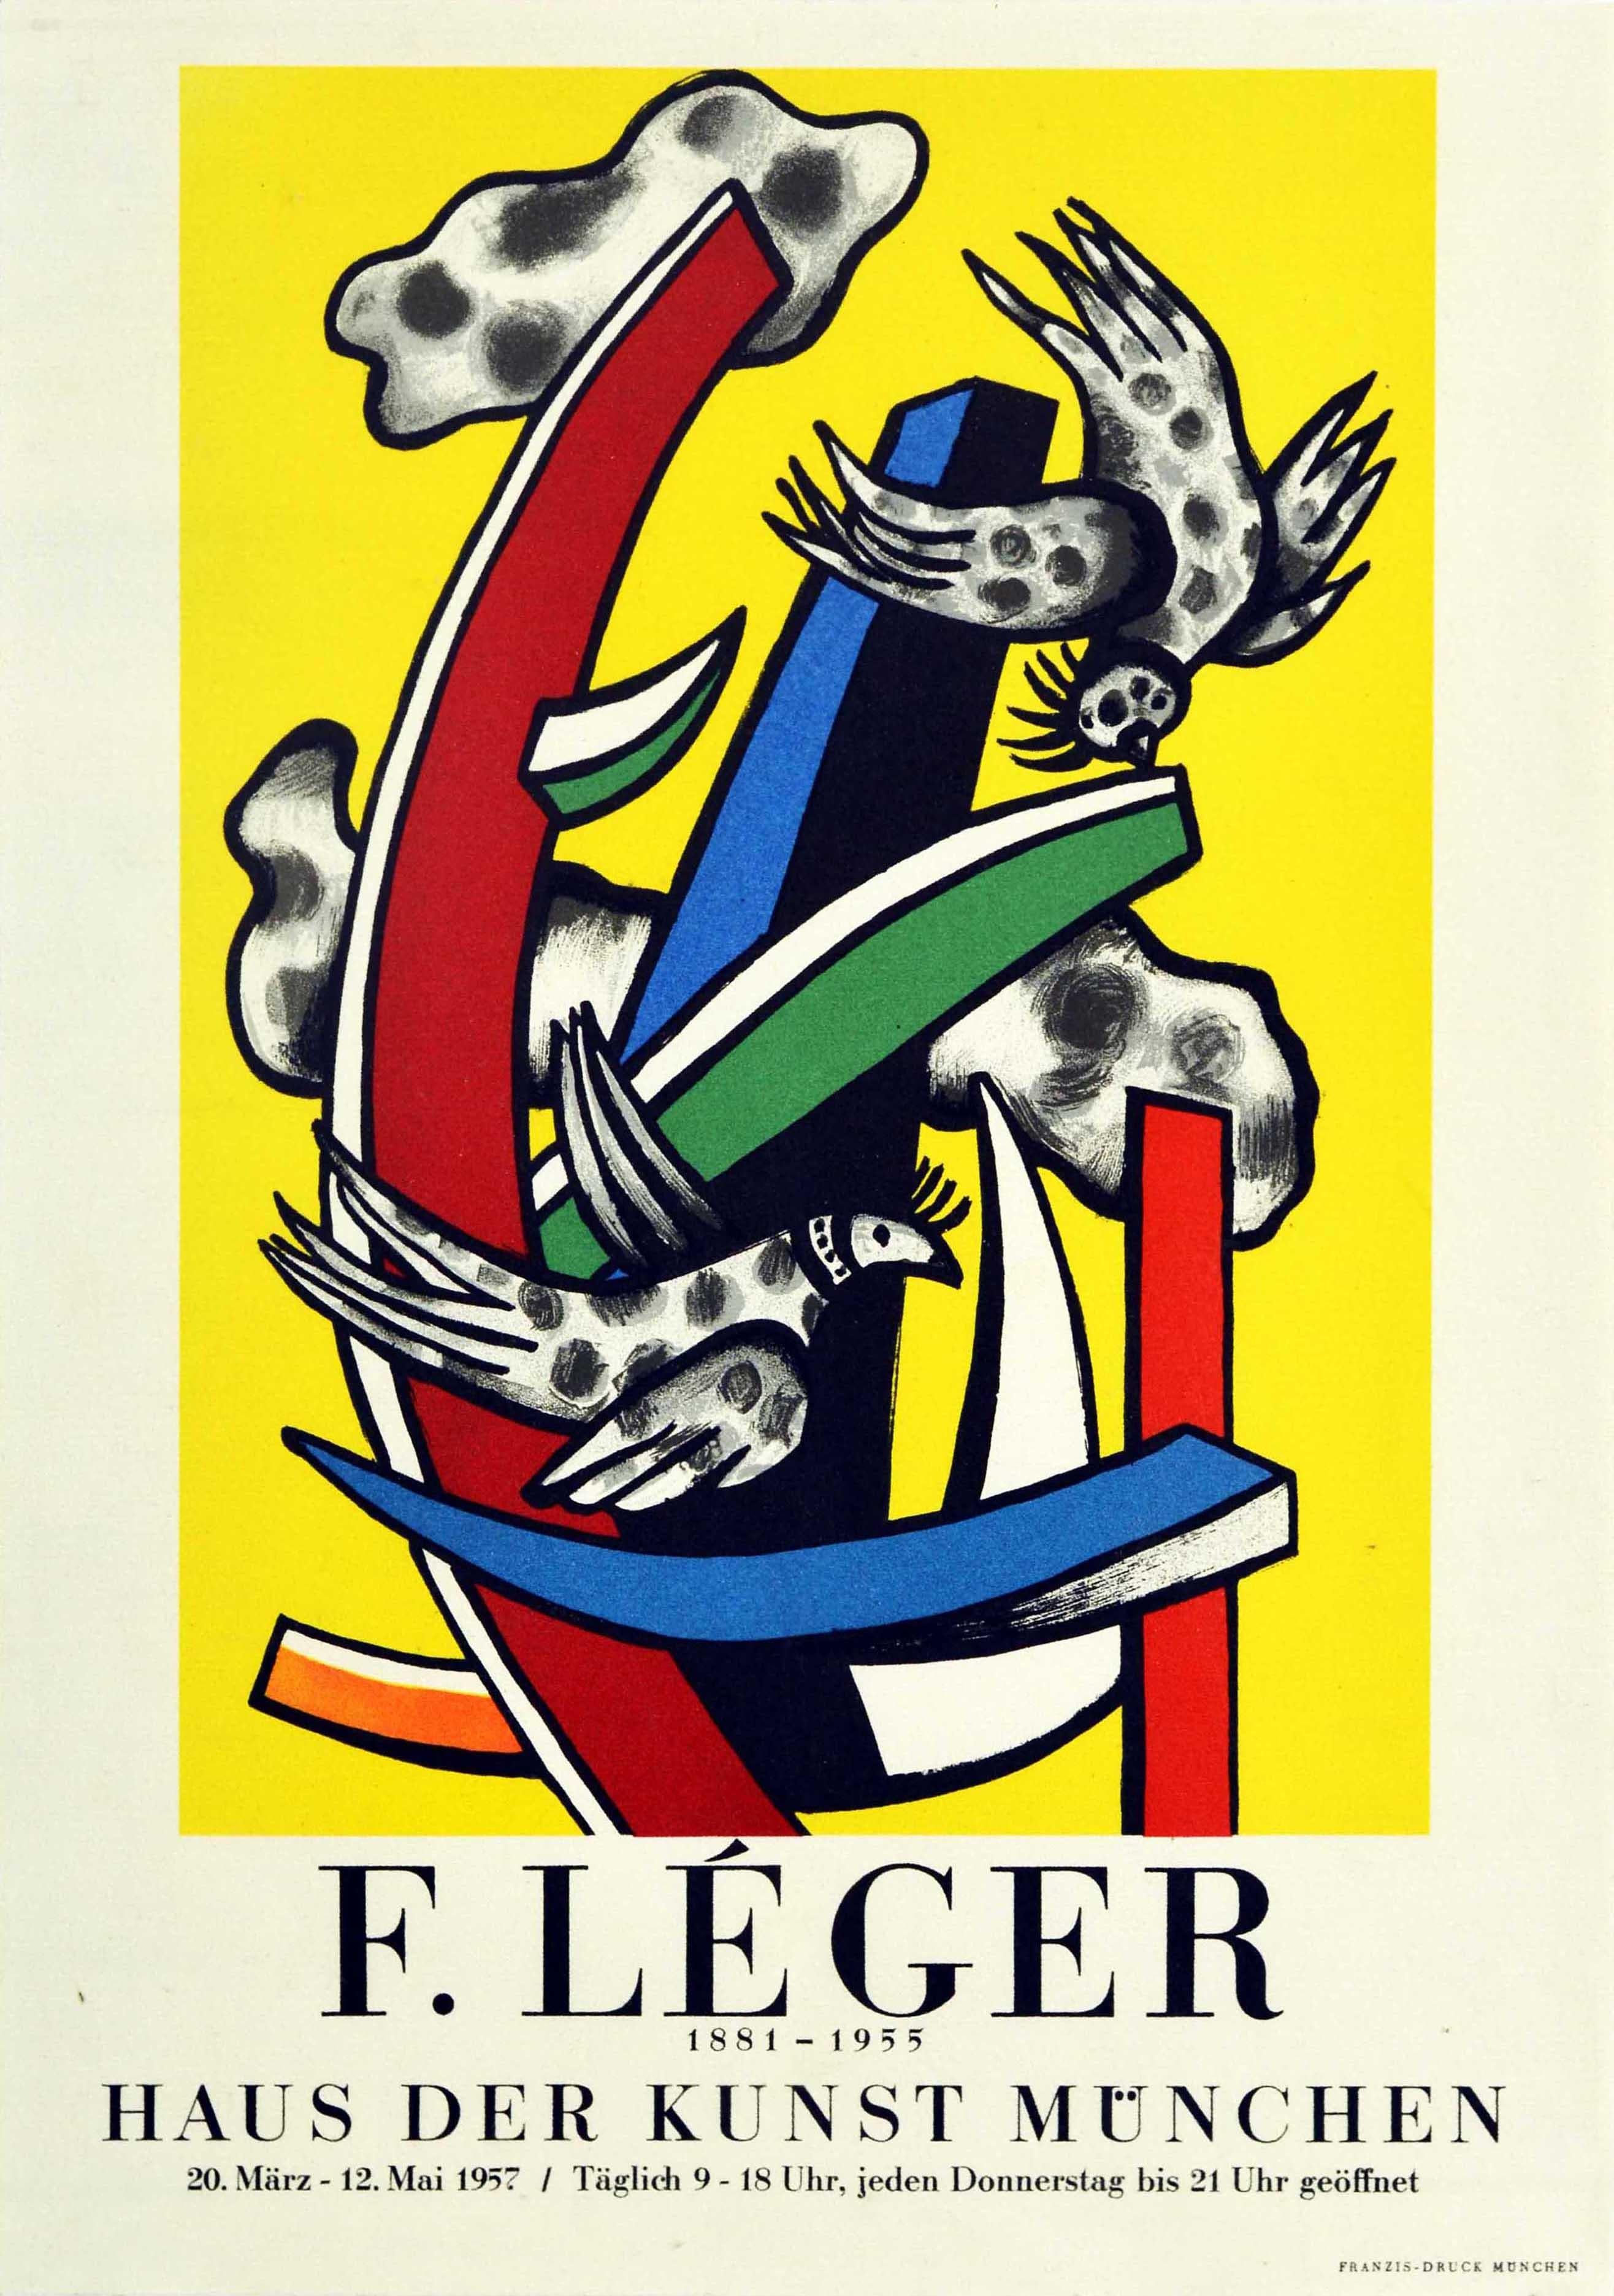 Affiche publicitaire originale d'époque pour une exposition d'œuvres de Fernand Leger (1881-1955) qui s'est tenue à la Haus der Kunst Munchen du 20 mars au 12 mai 1957. L'affiche présente un dessin coloré de Léger intitulé Les Oiseaux sur Fond Jaune